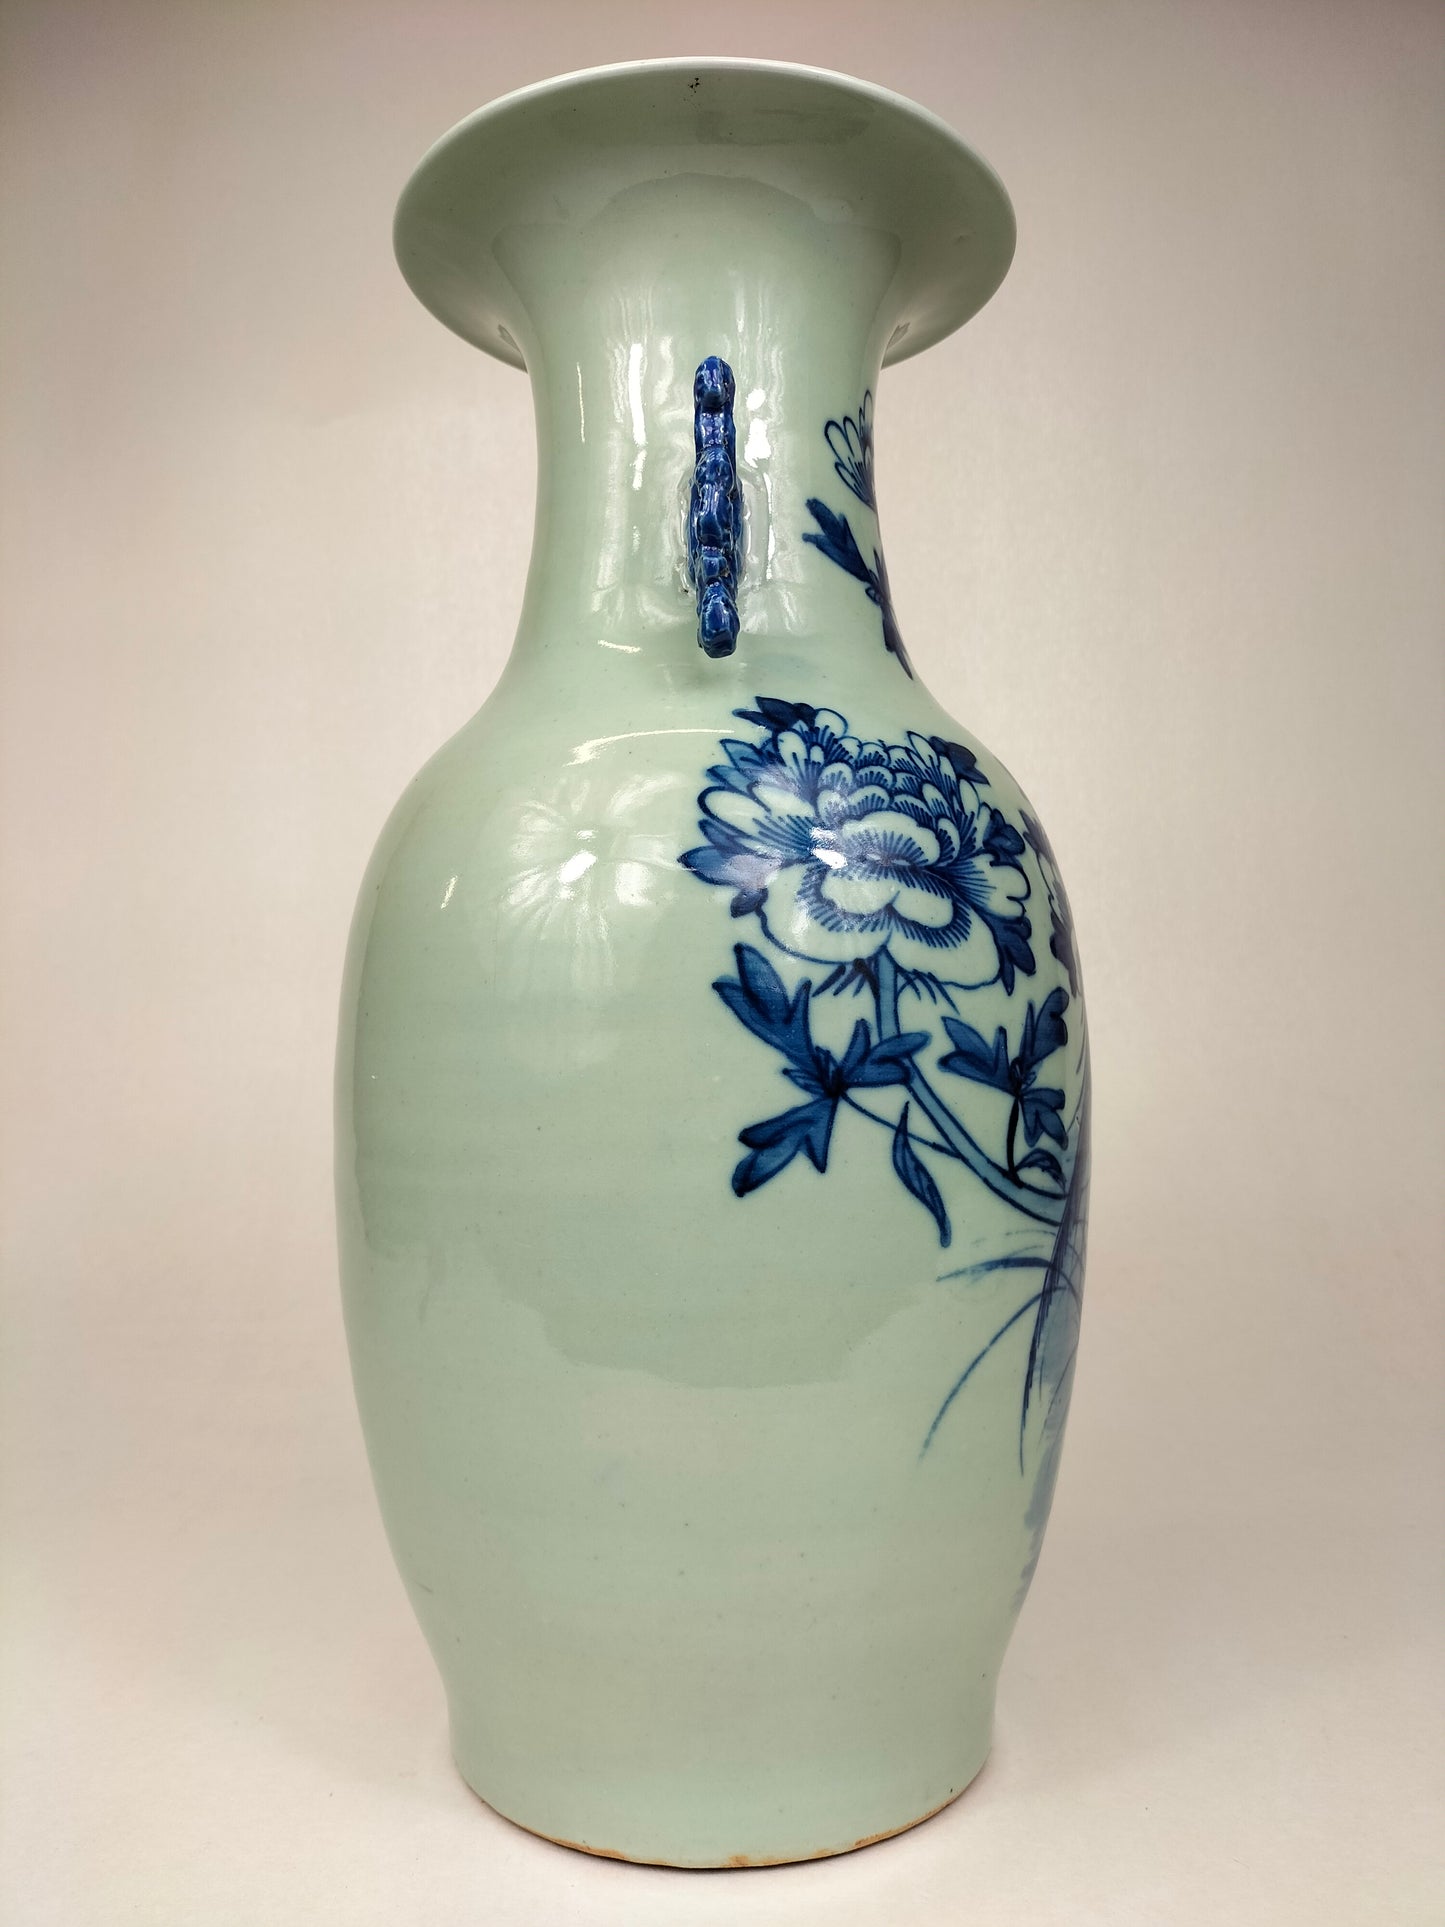 Antigo vaso chinês decorado com pássaros e flores // Dinastia Qing - século XIX